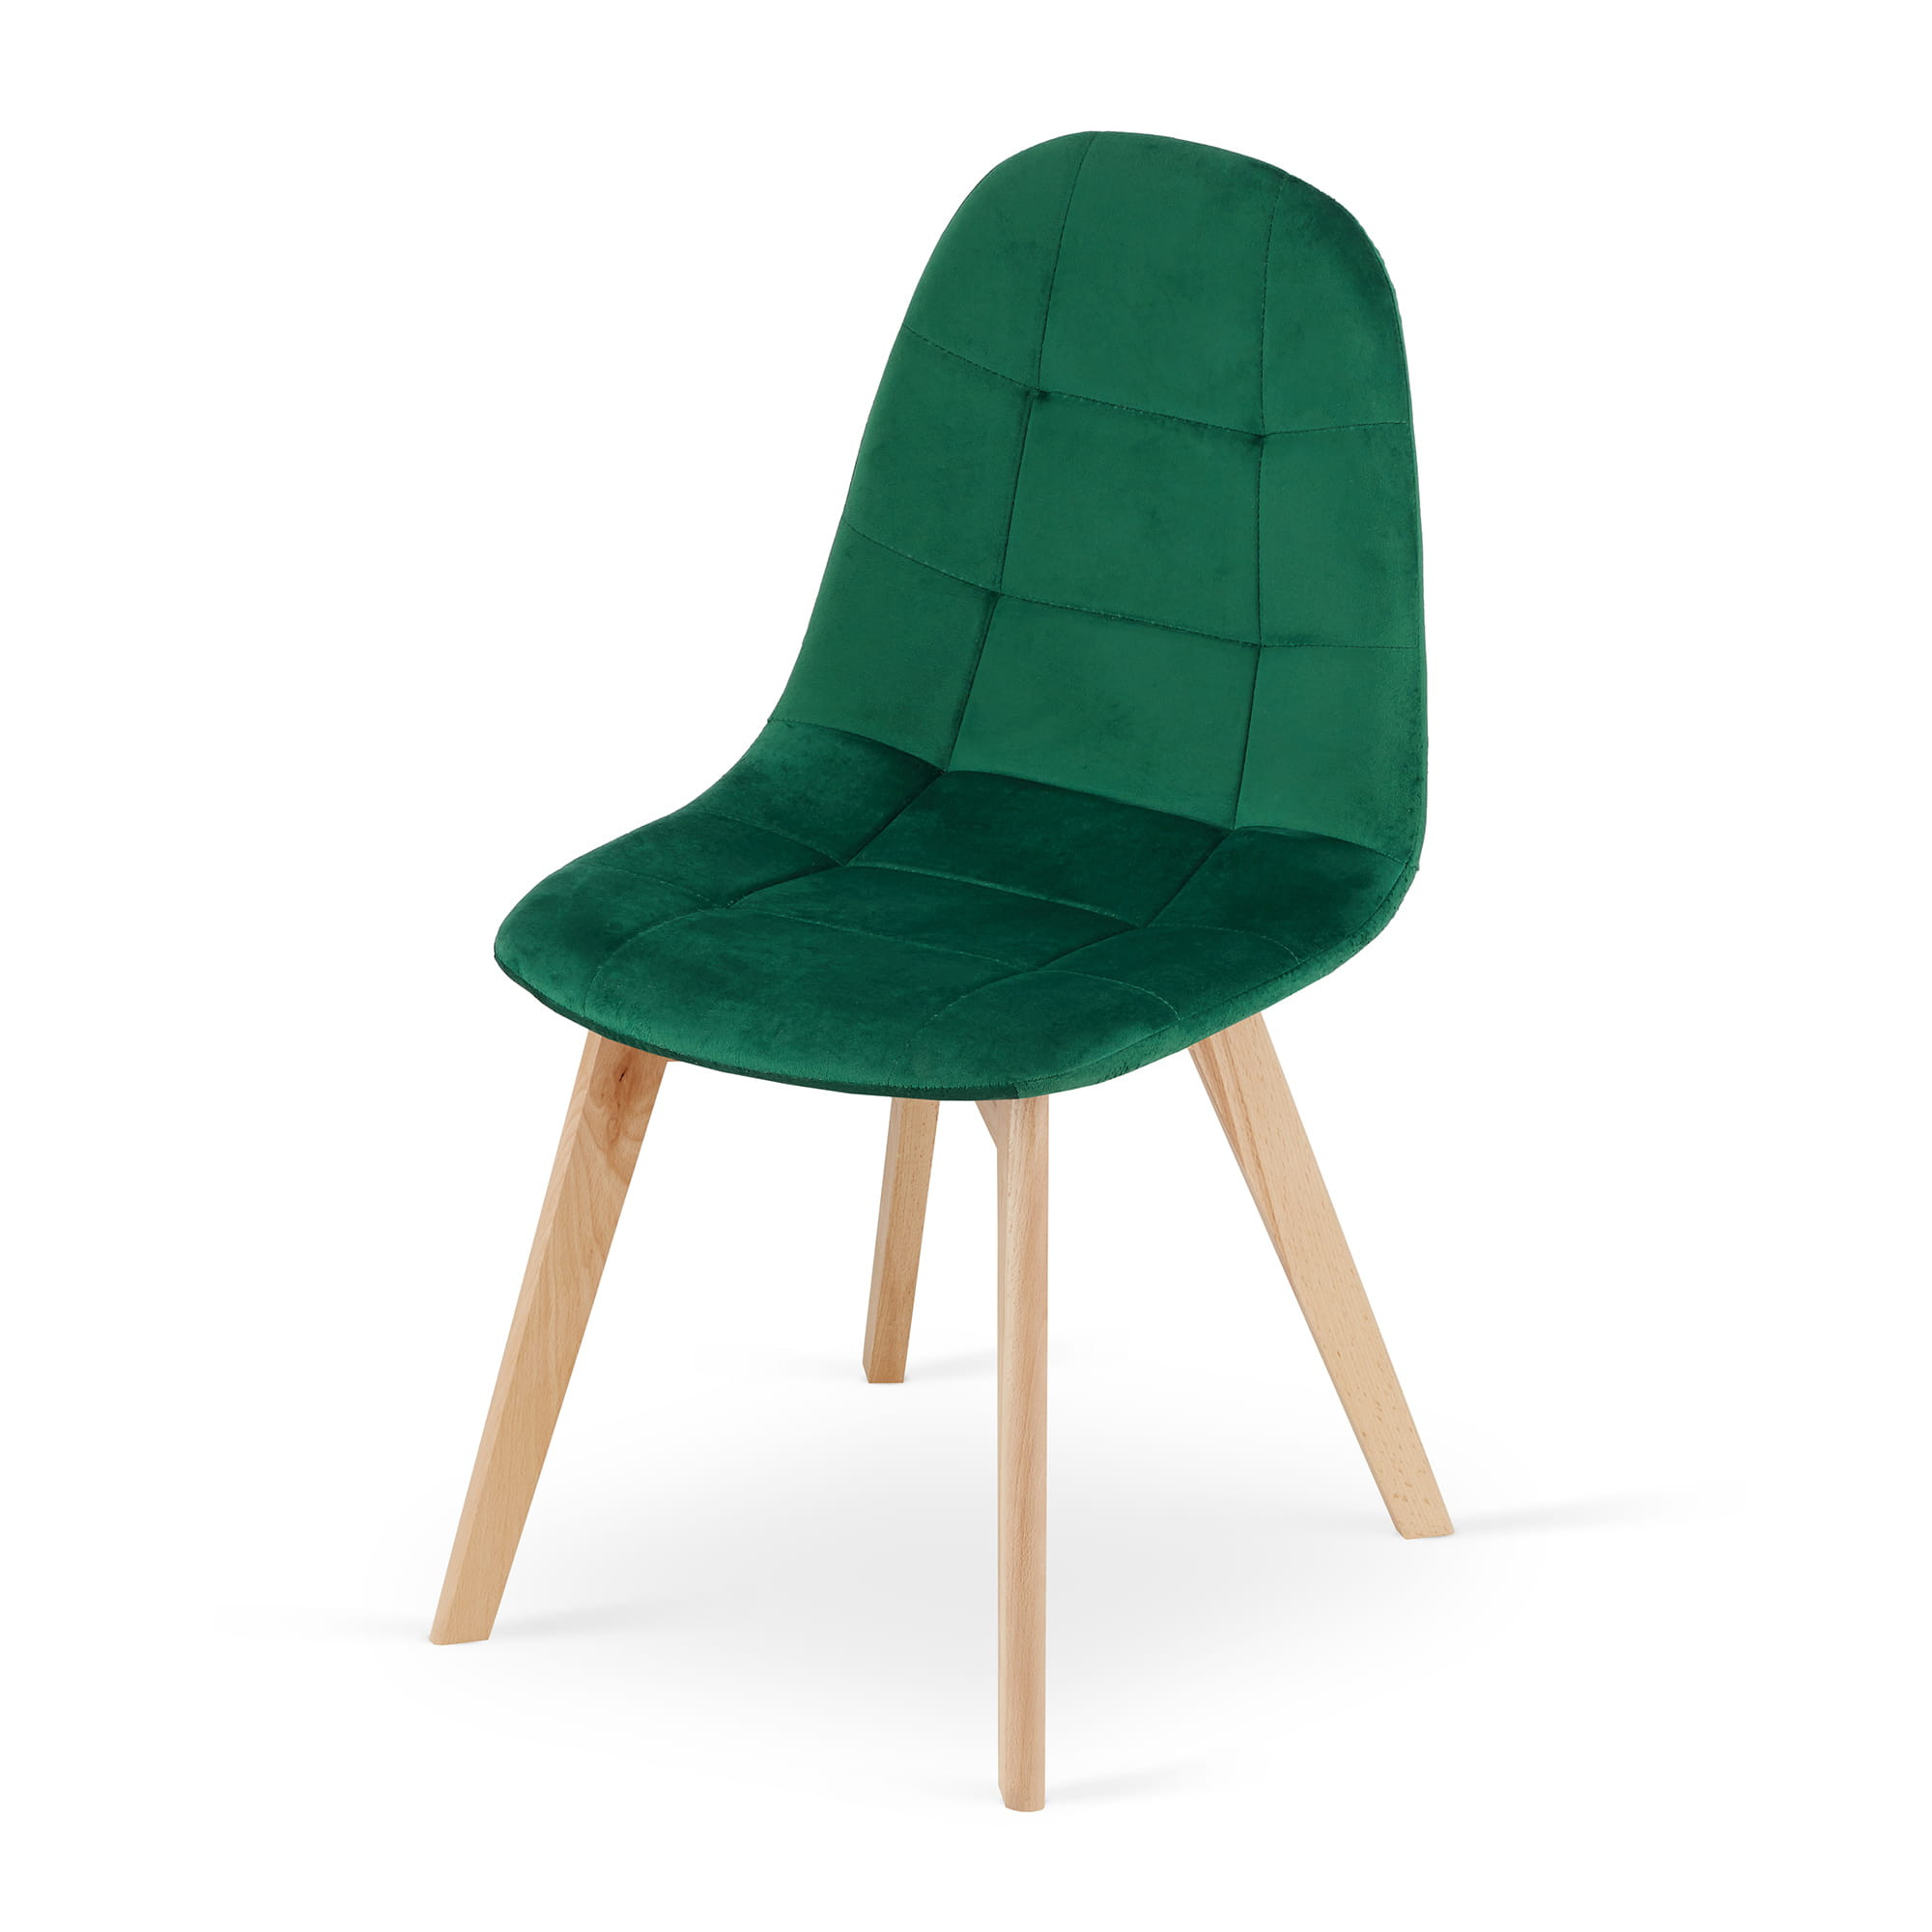 Jídelní židle BORA samet - zelená